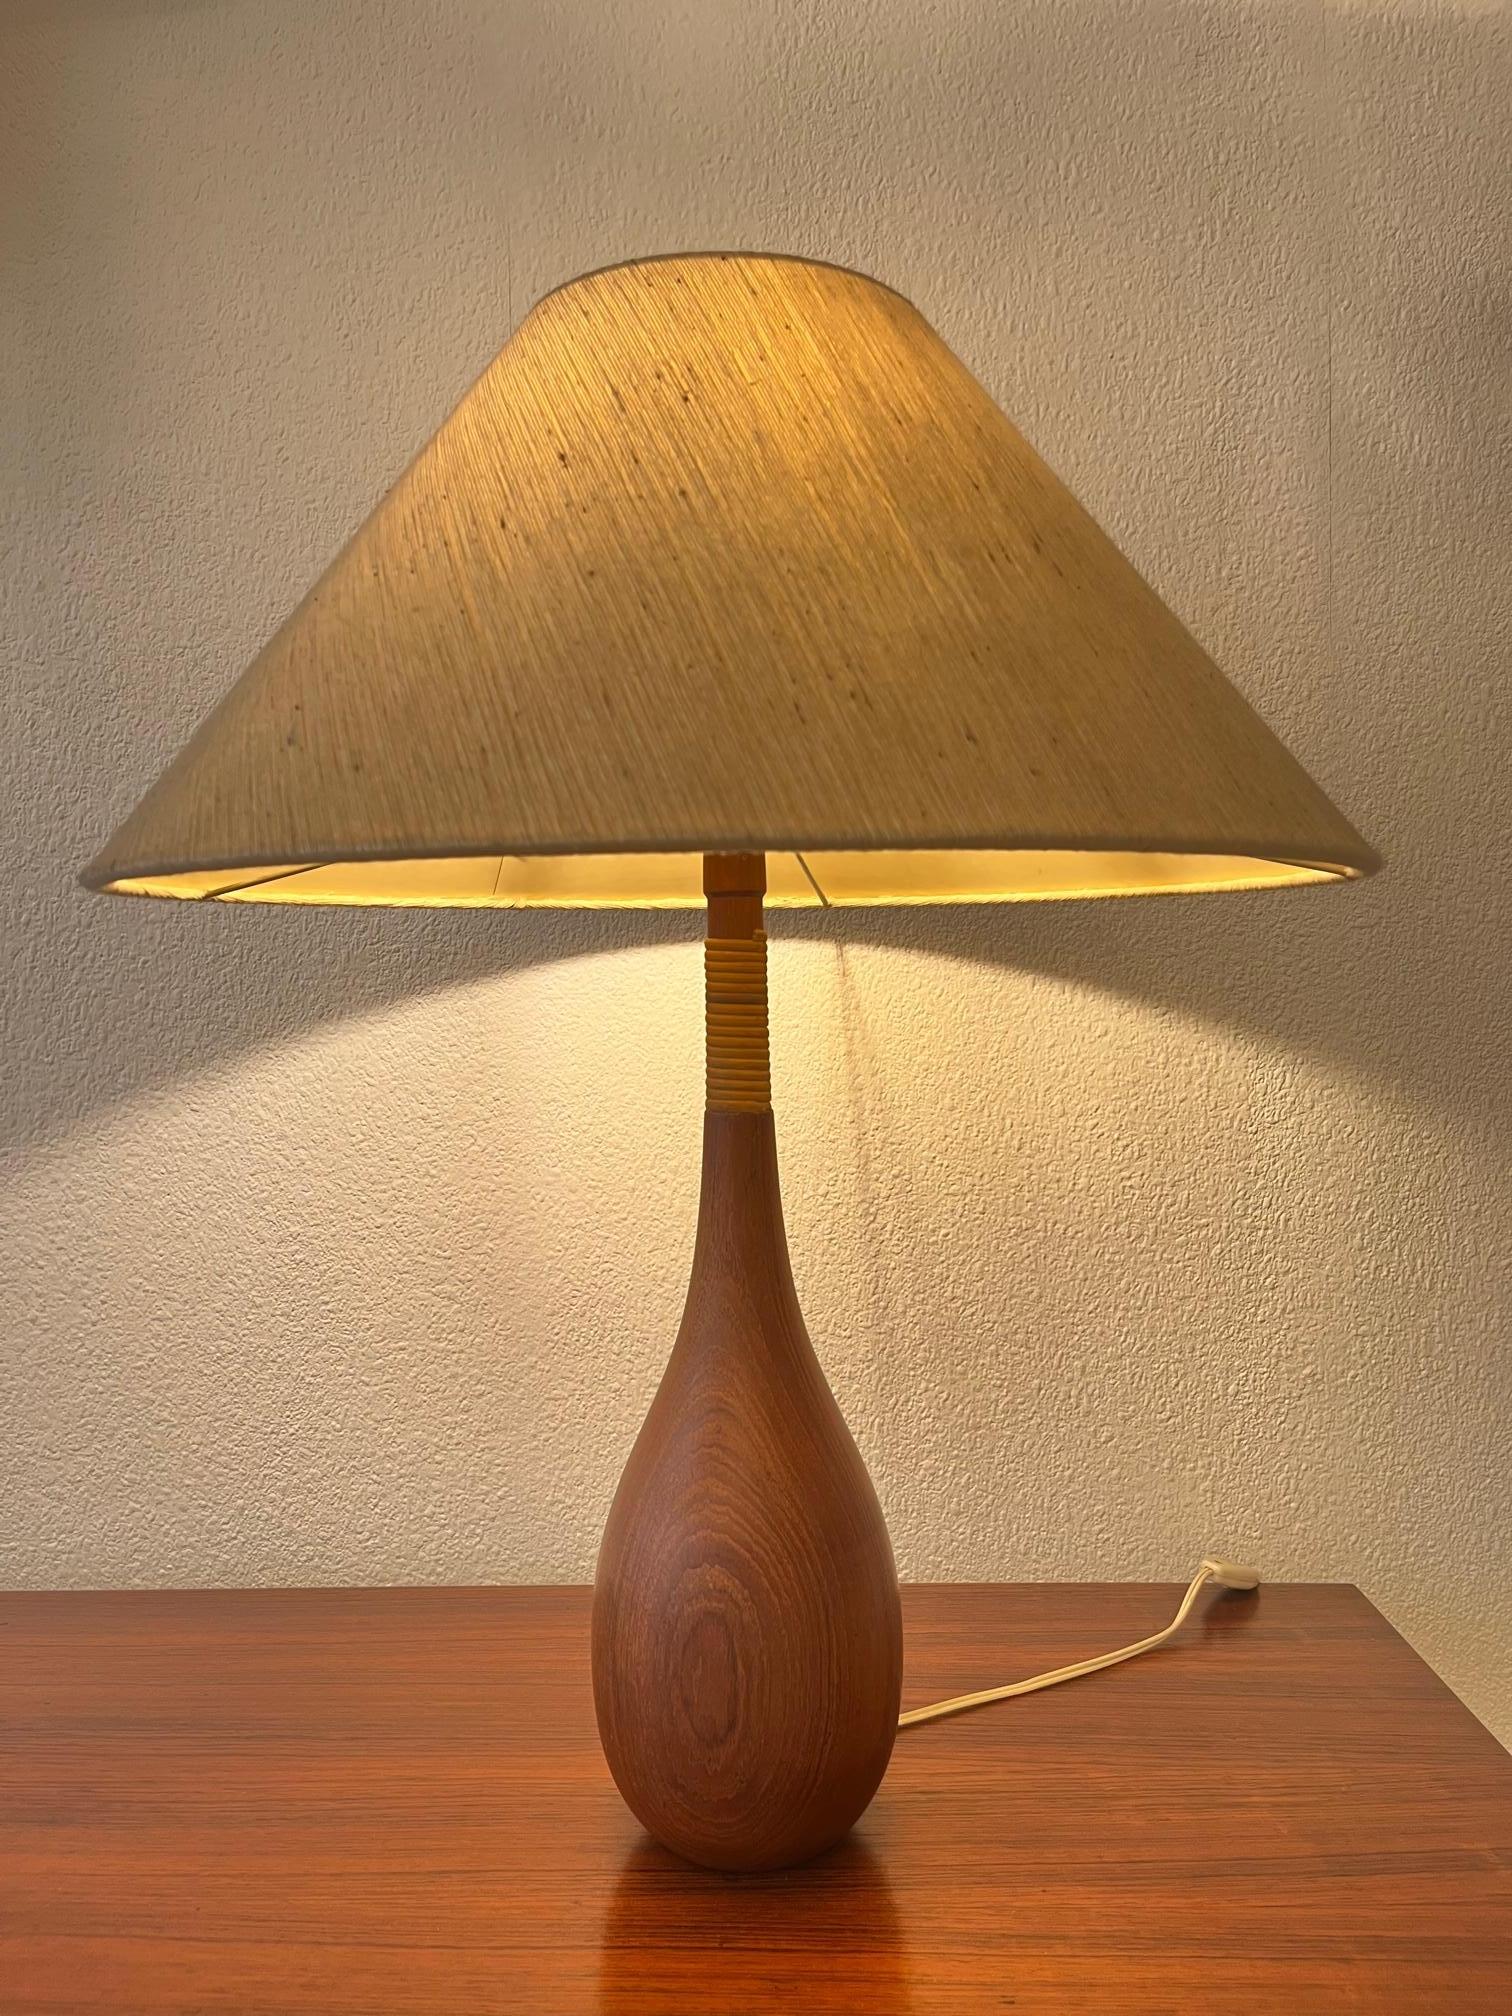 Tischlampe aus Teakholz und Schilfrohr in Flaschenform mit konischem Seidenschirm.
Guter Vintage-Zustand.
H 68 x T 55 cm
